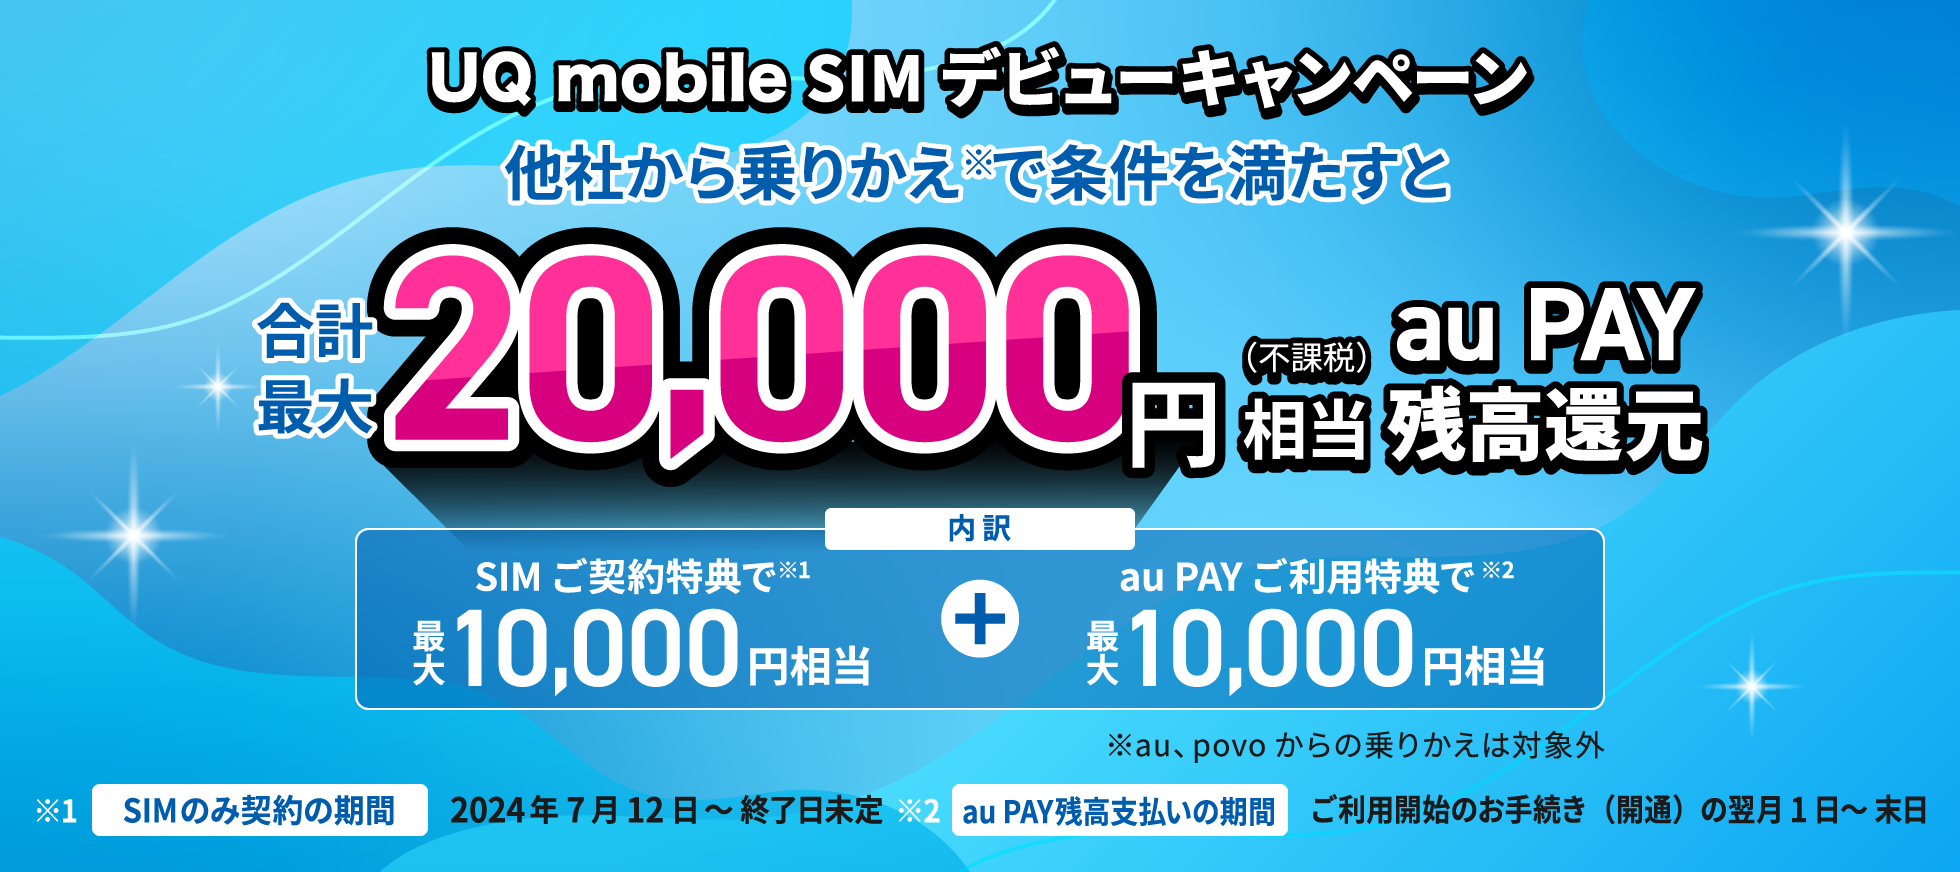 UQ mobile SIM & au PAY ご利用キャンペーン